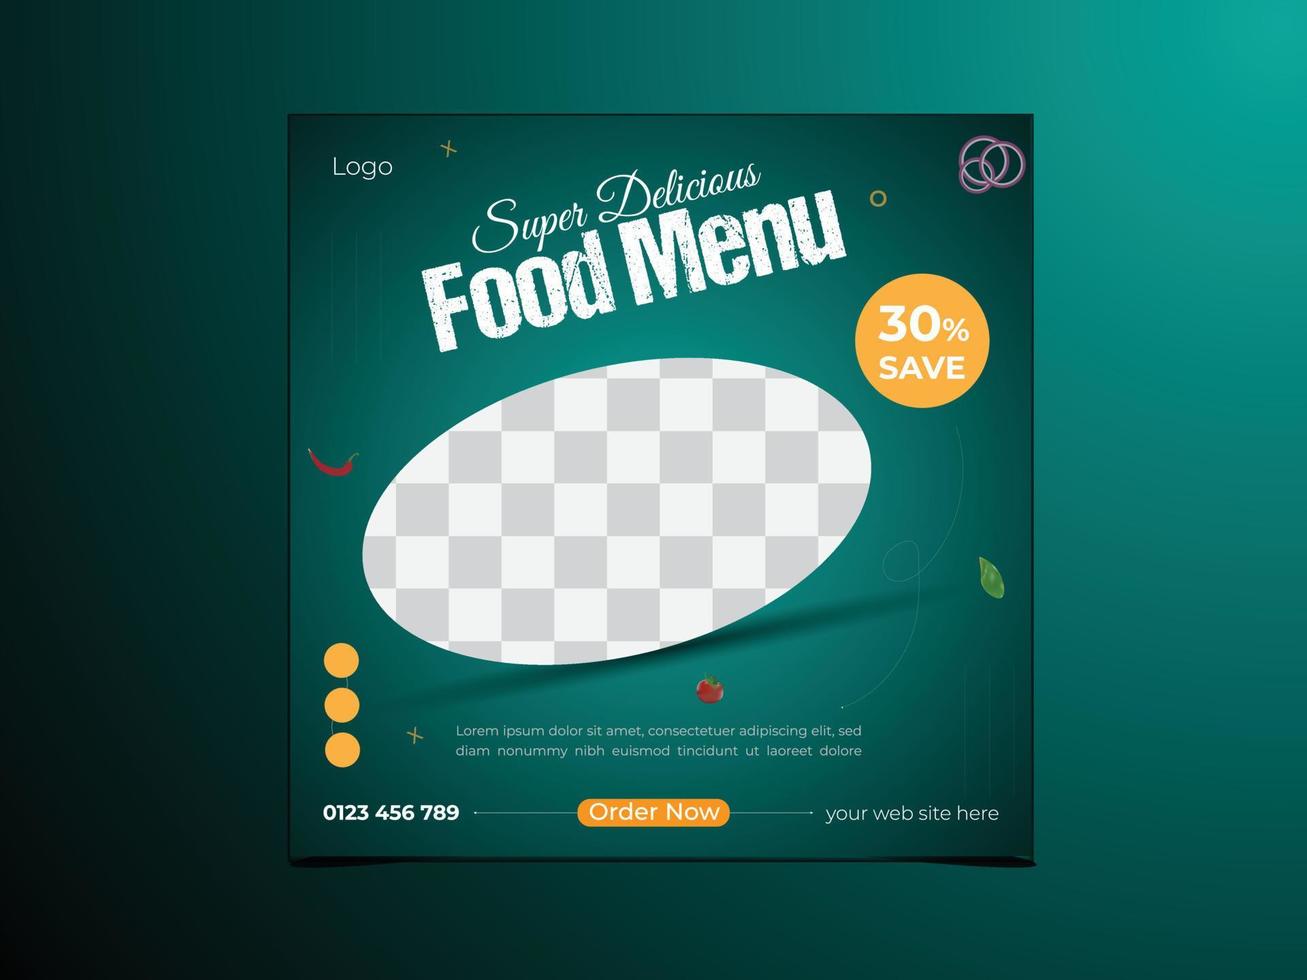 plantilla de publicación en redes sociales para marco de banner de promoción de menú de comida vector